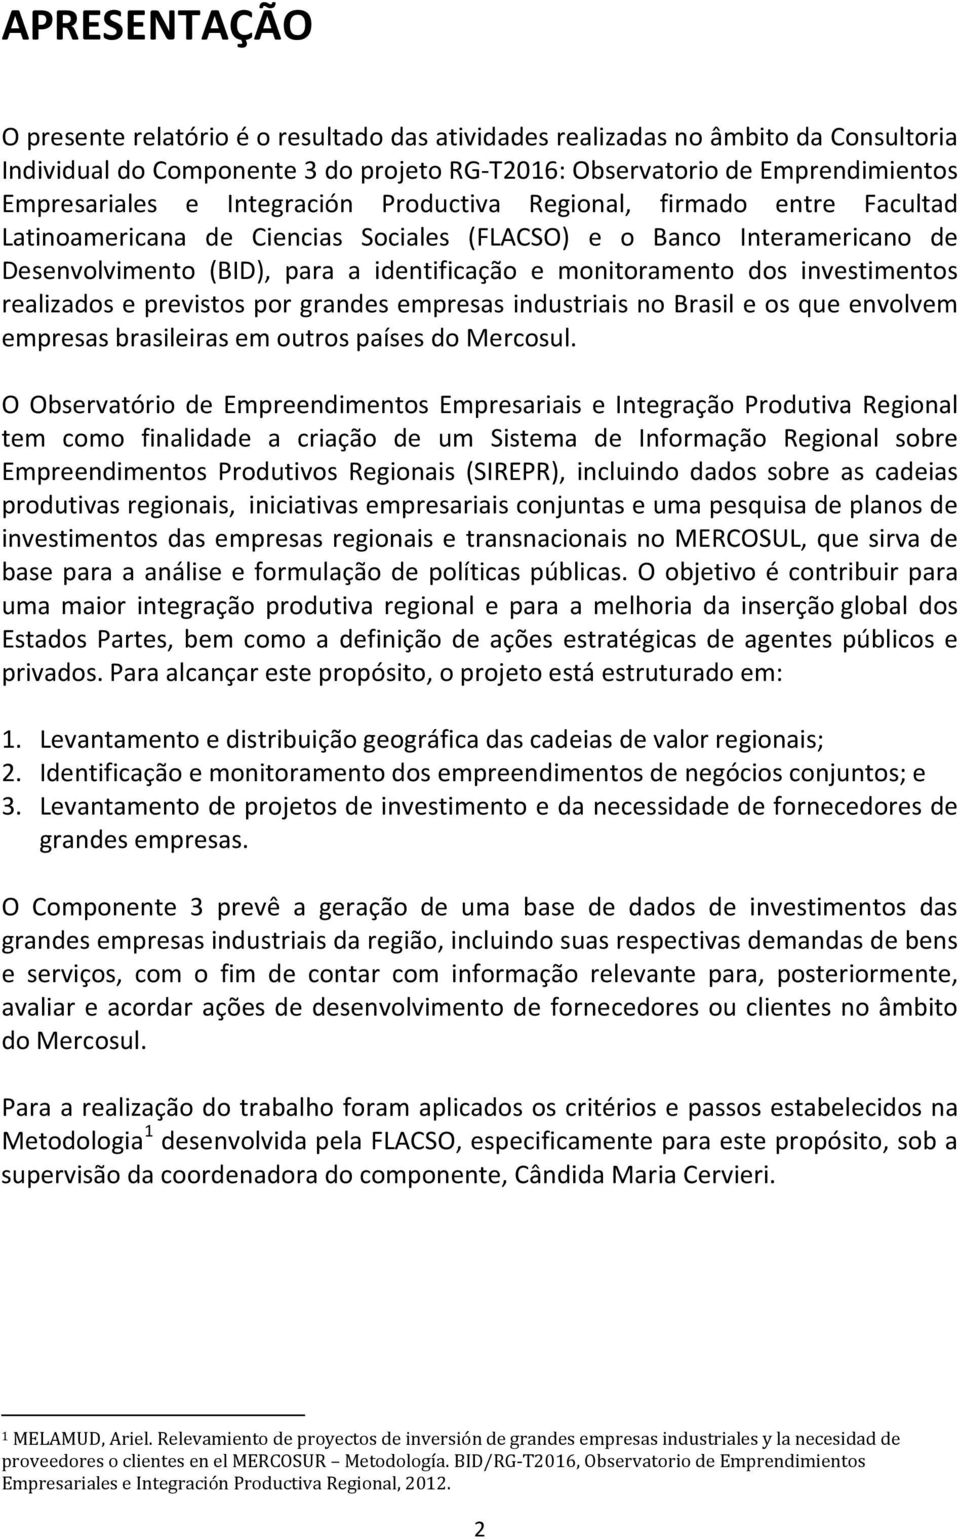 investimentos realizados e previstos por grandes empresas industriais no Brasil e os que envolvem empresas brasileiras em outros países do Mercosul.